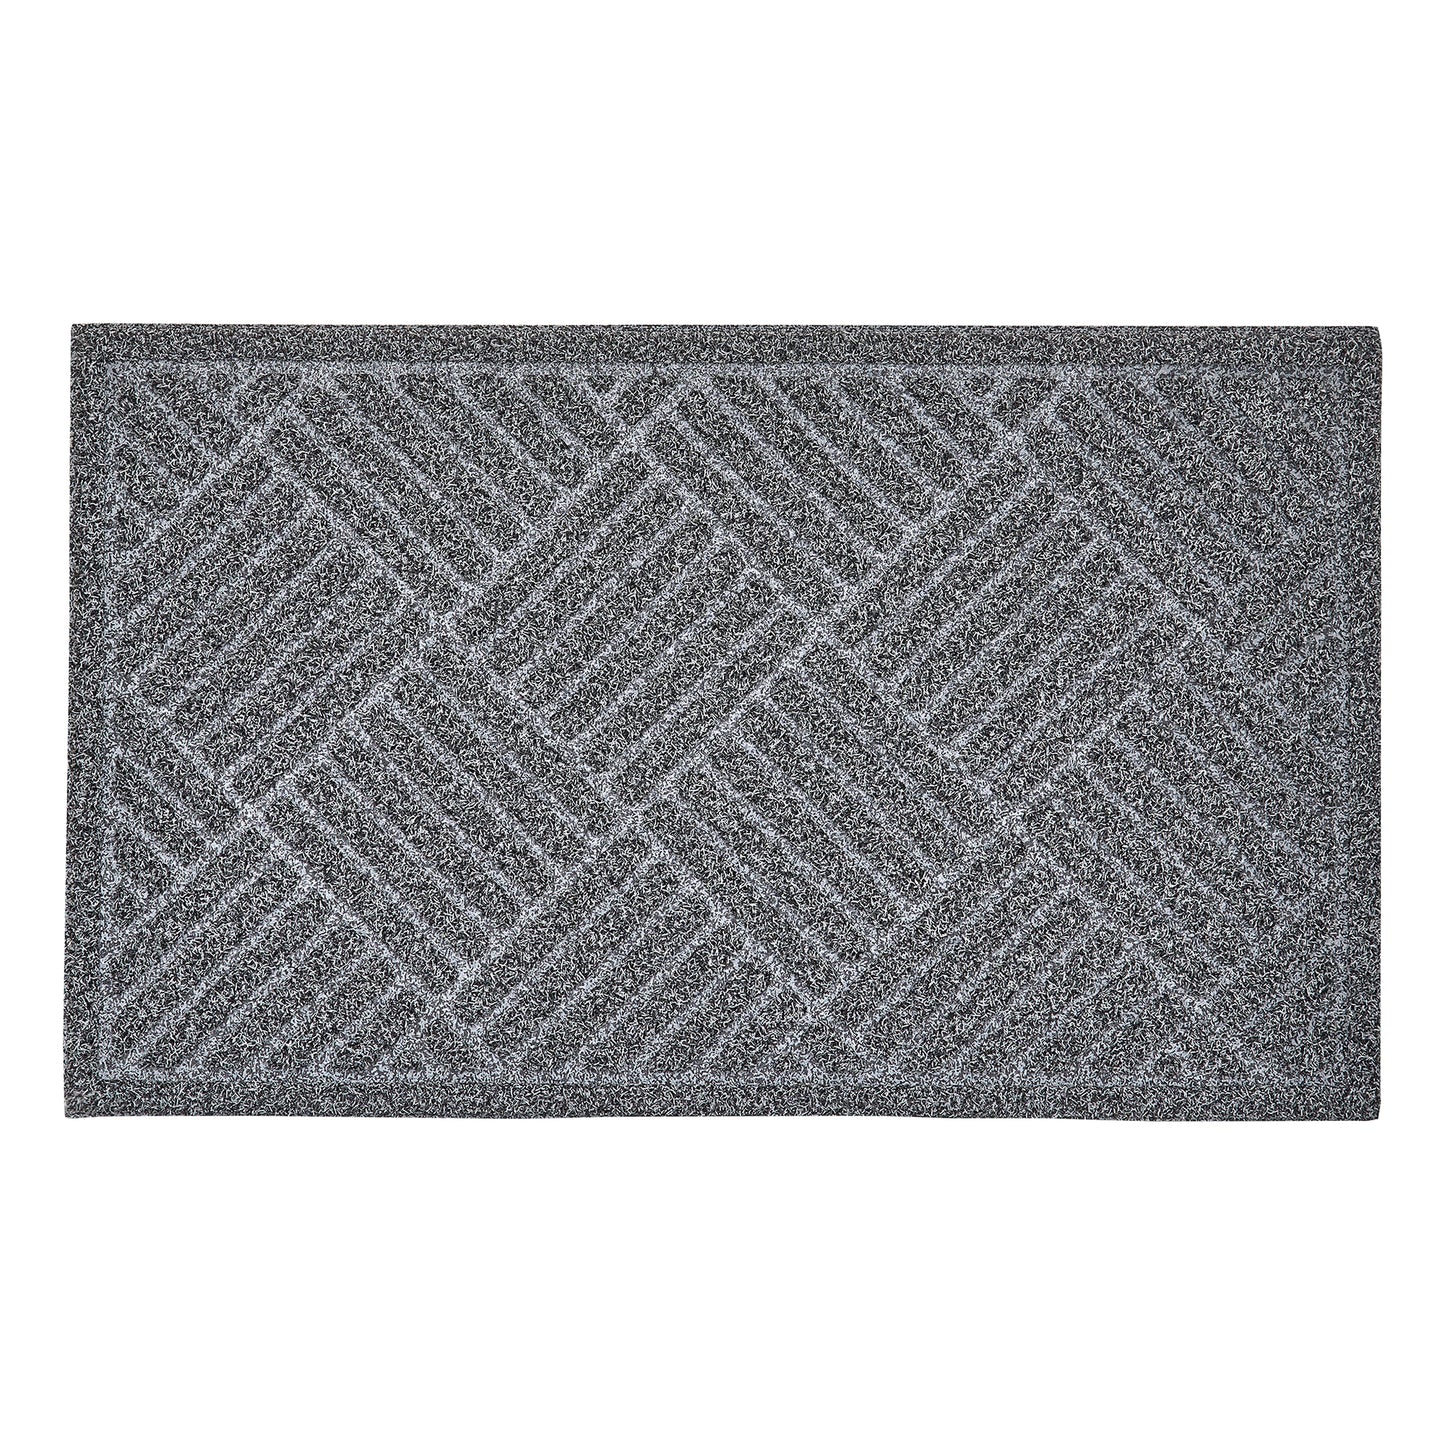 Crosshatch Coir Doormat